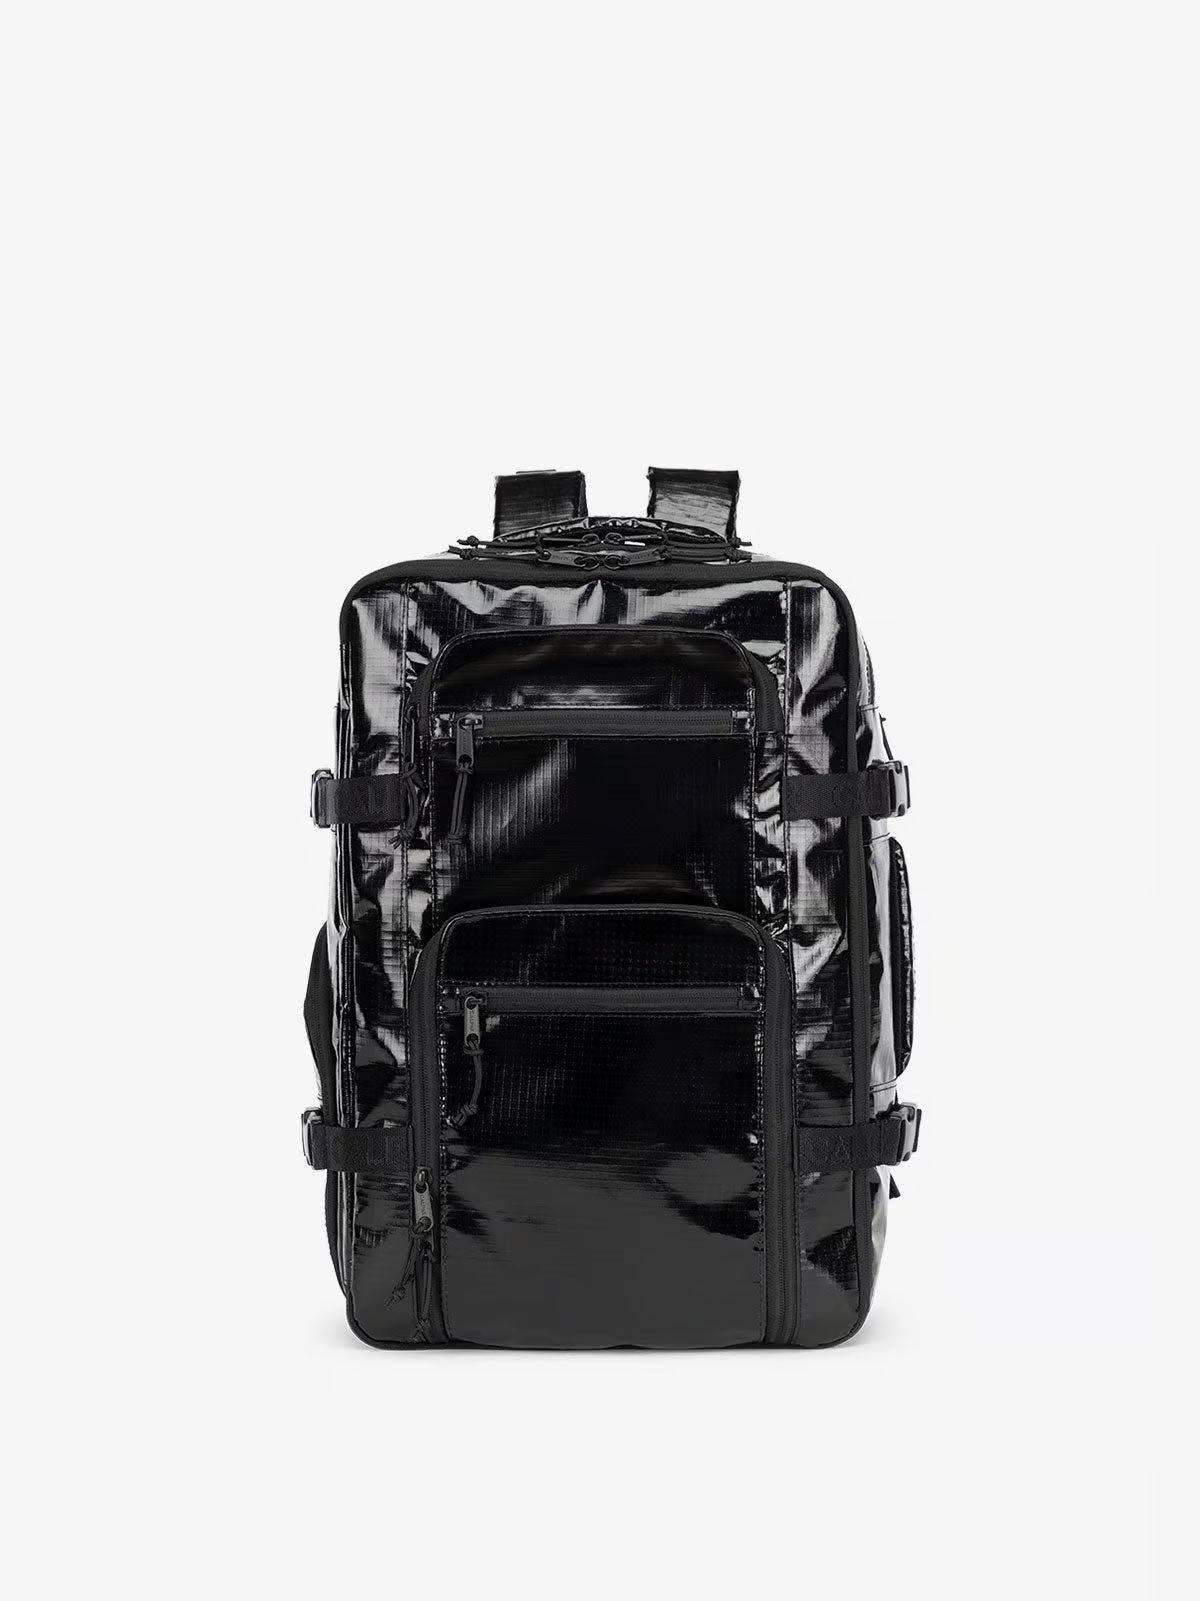 Duffel Backpack: Terra 26L 2 in 1 | CALPAK | CALPAK Travel